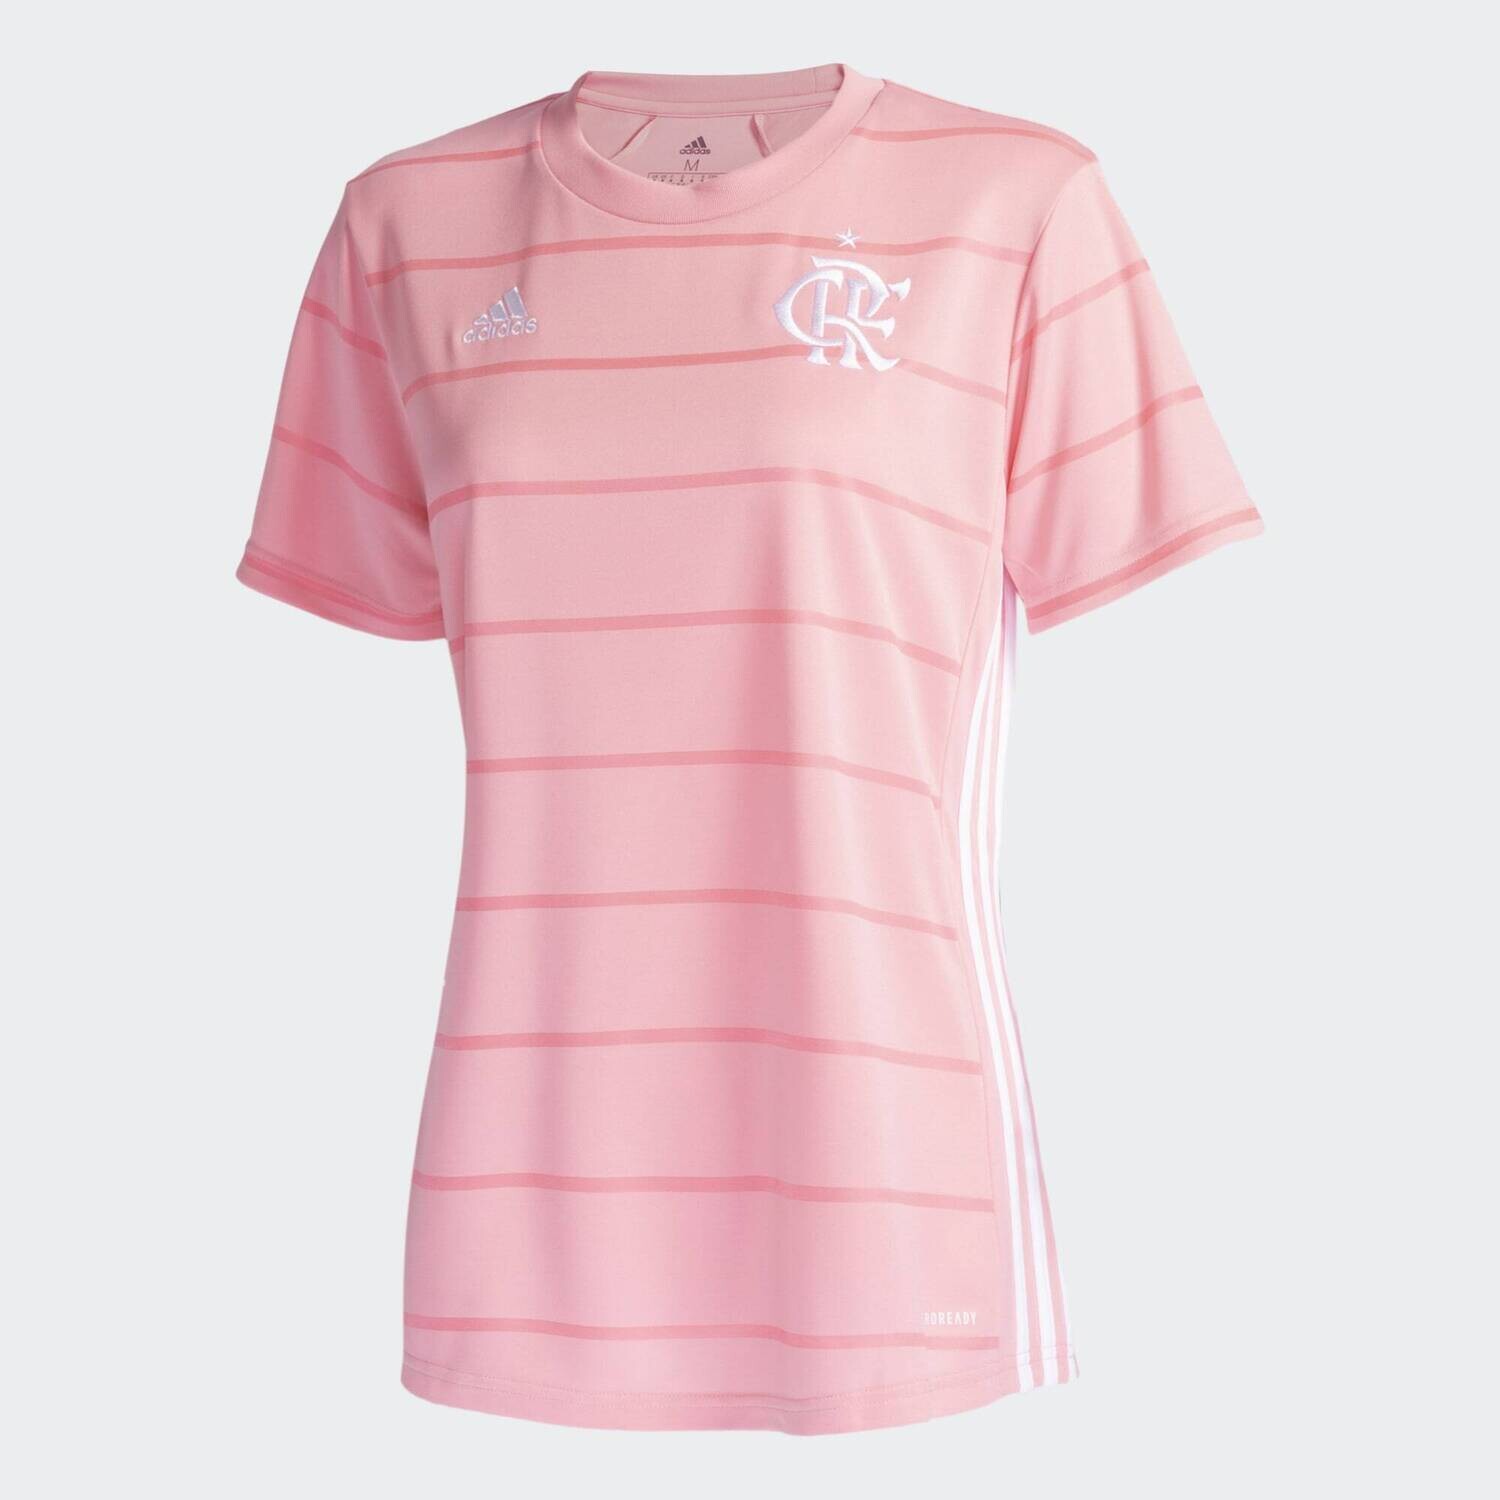 Camisa Flamengo Feminina Outubro Rosa Adidas 2021/2022